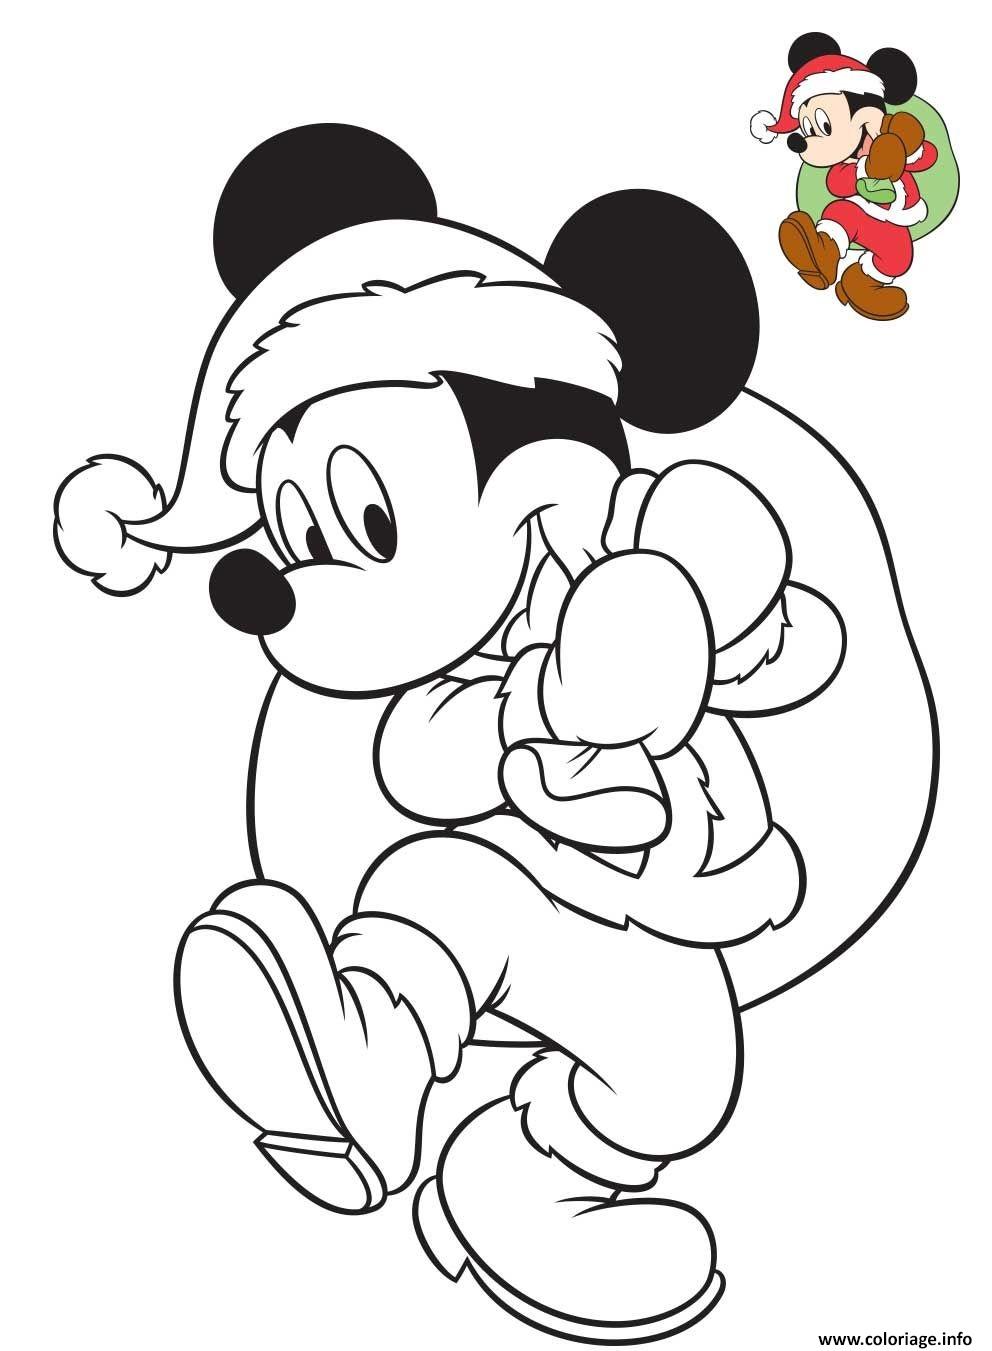 Dessin mickey mouse joue au pere noel avec le sac de cadeaux Coloriage Gratuit à Imprimer